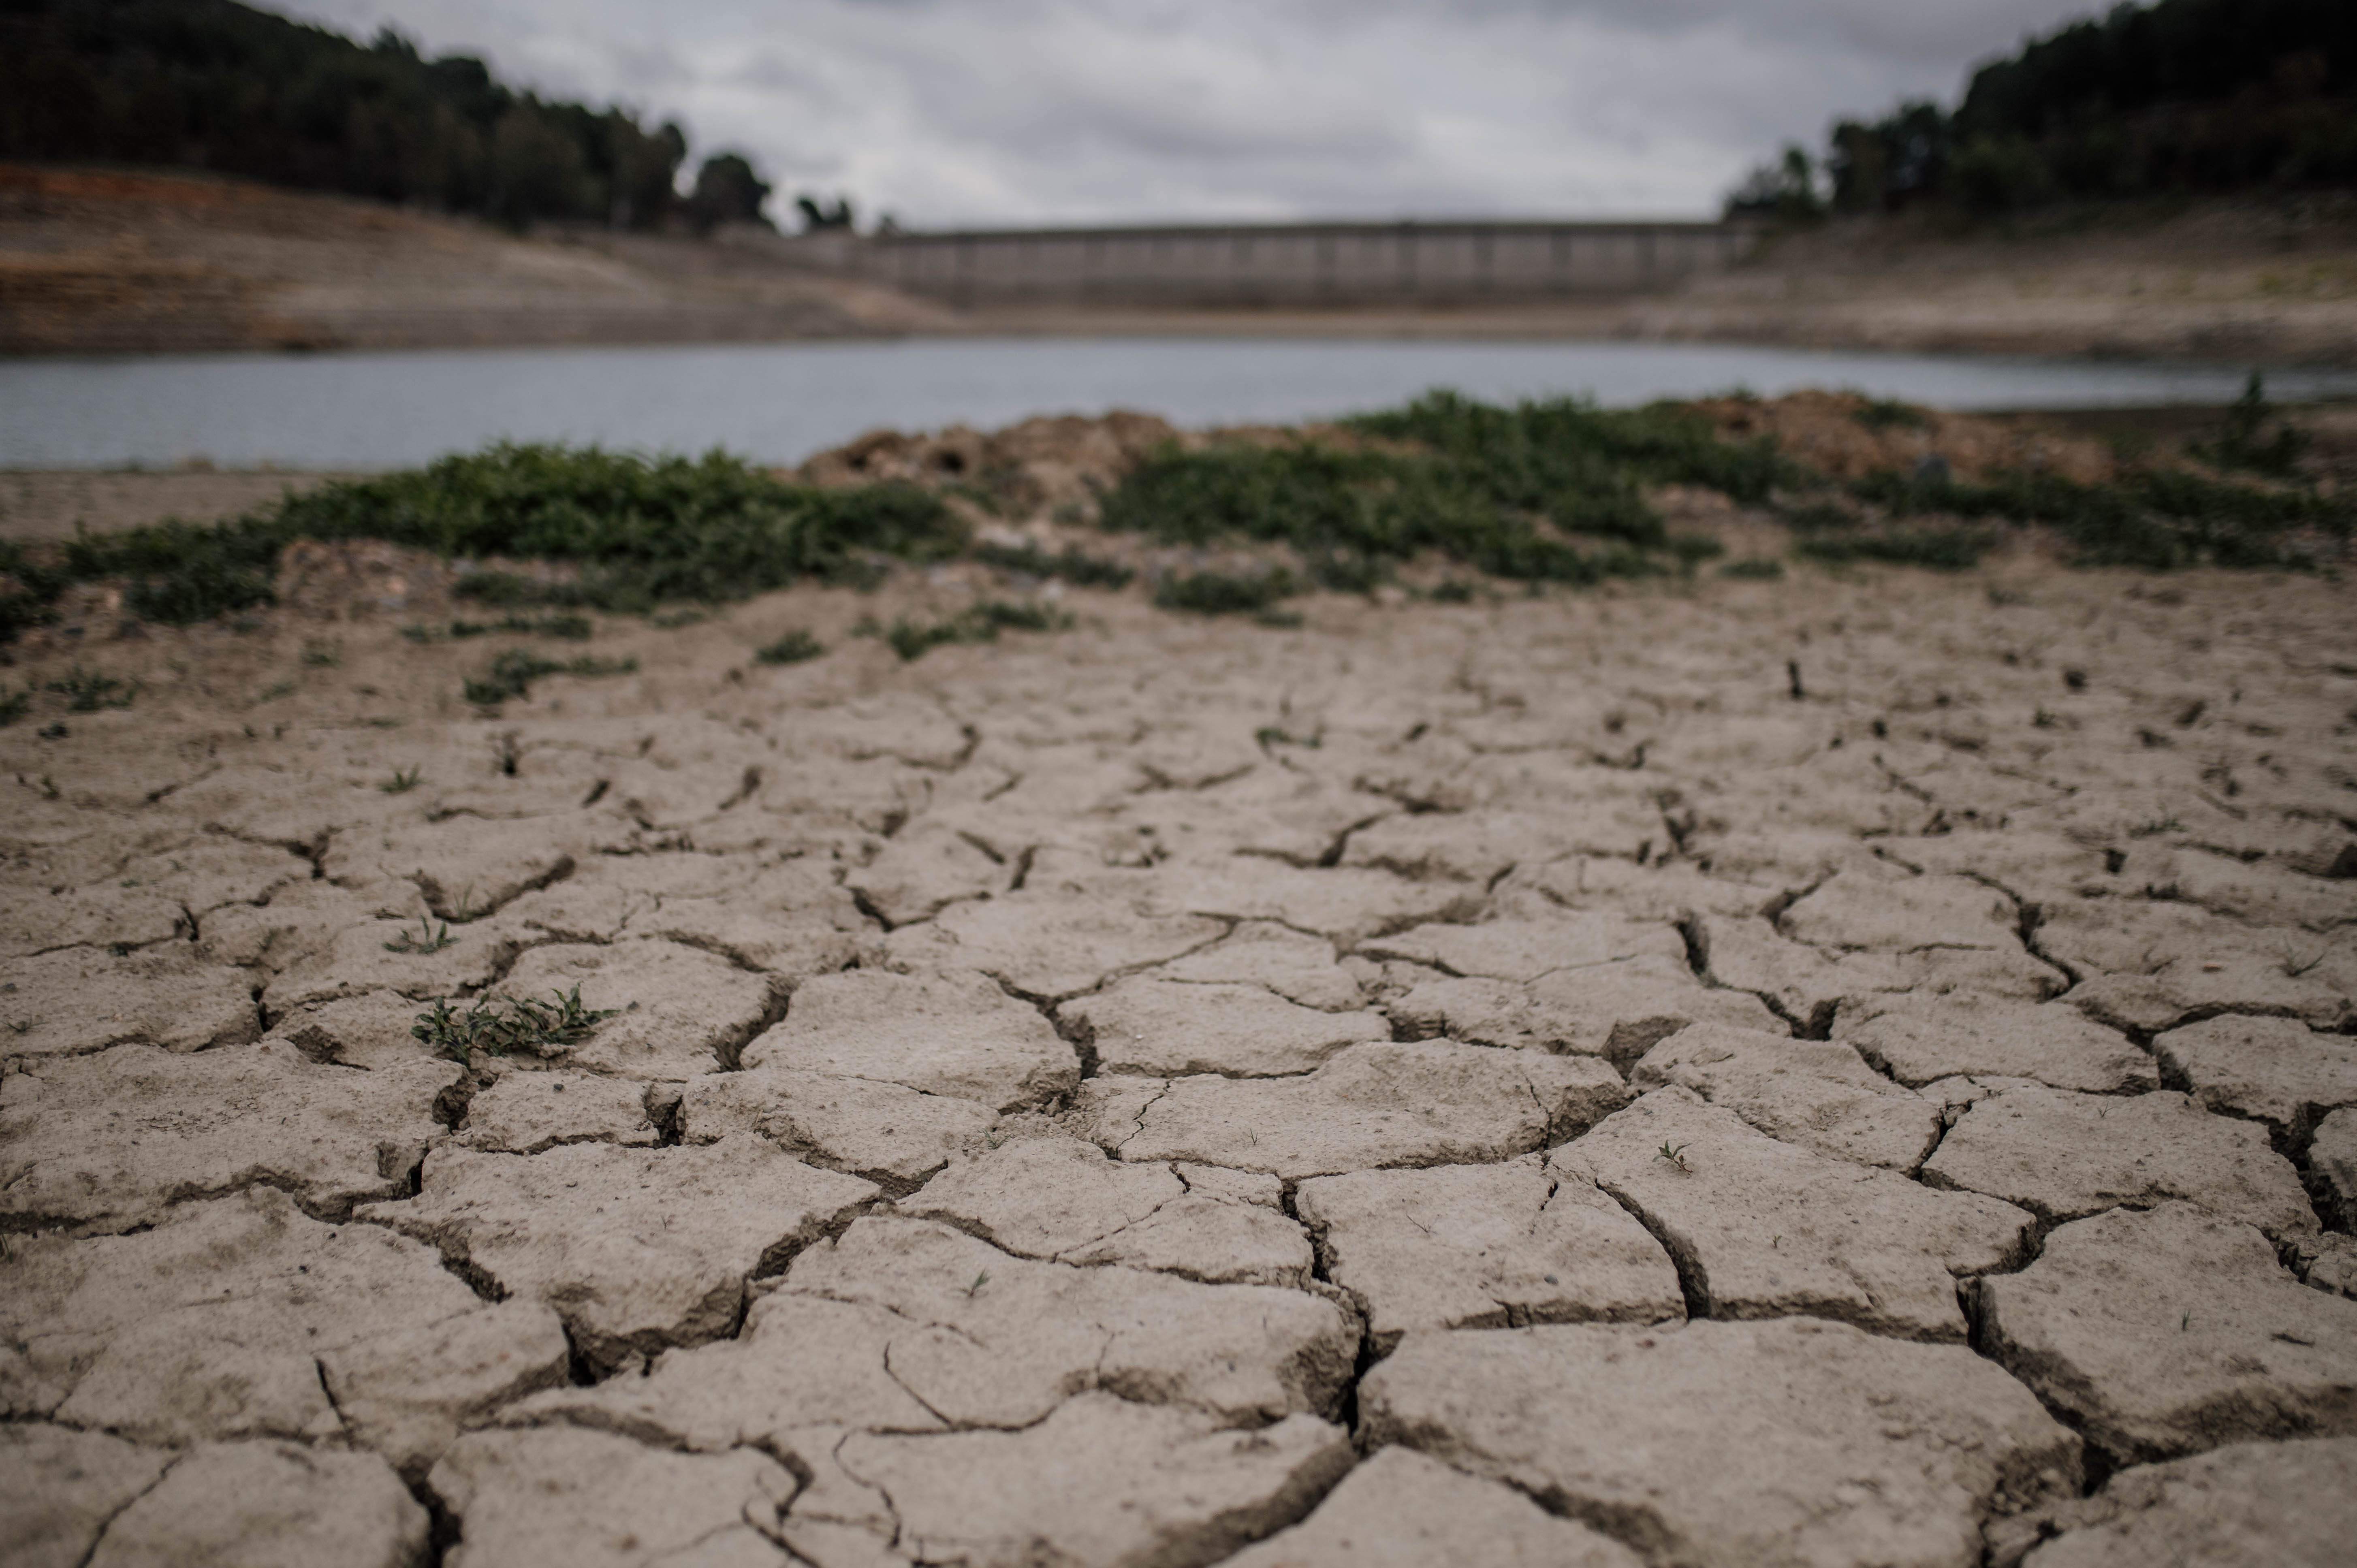 El Govern prevé avanzar la preemergencia por sequía "en los próximos días" con nuevas restricciones